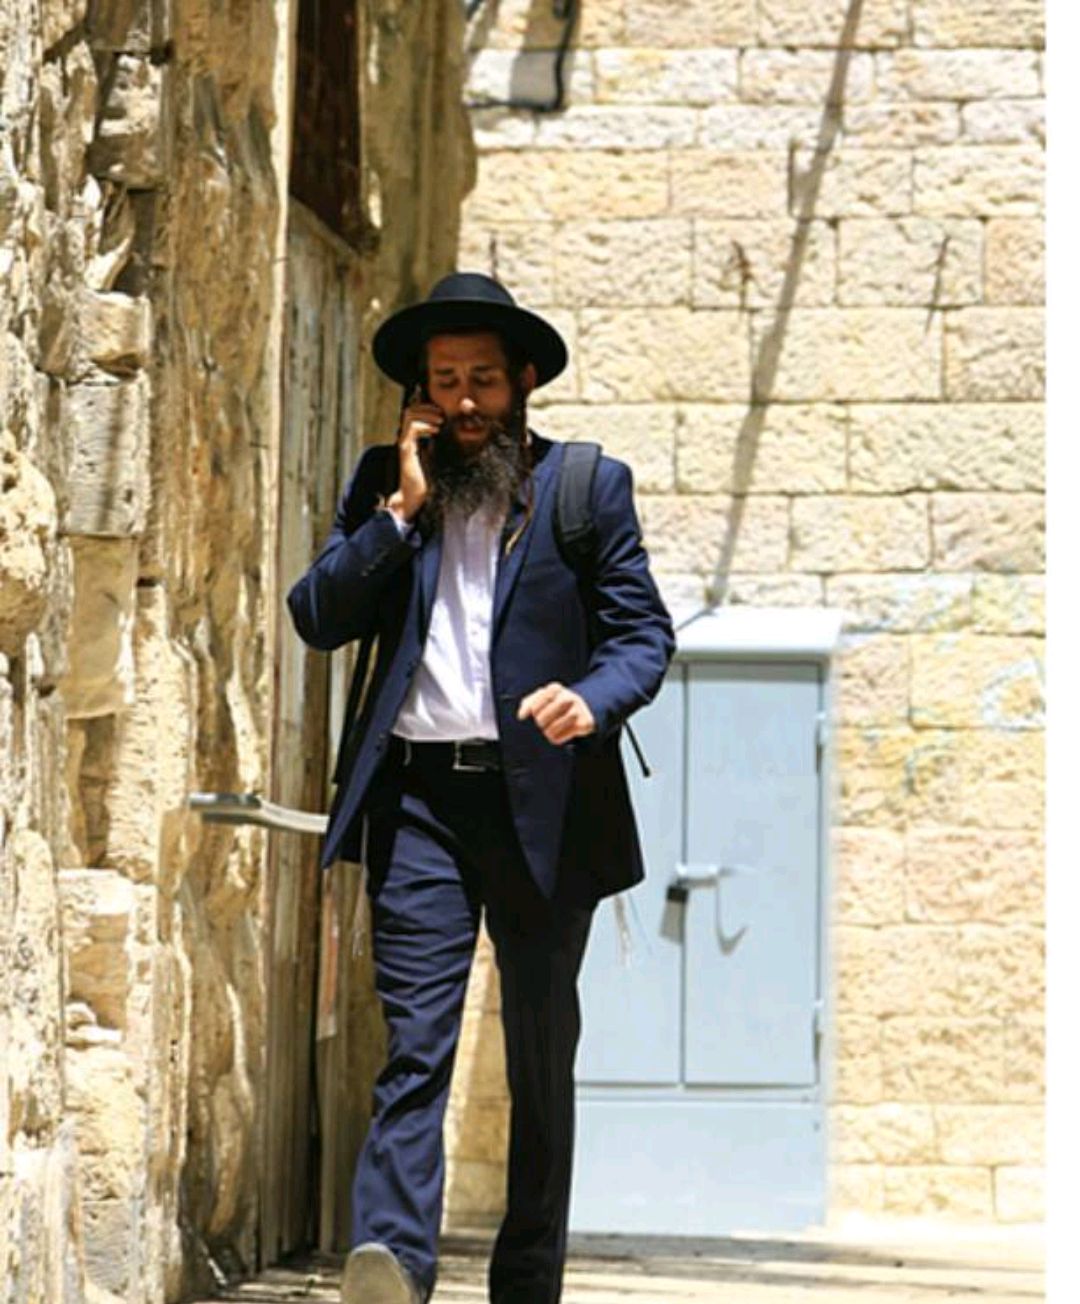 街拍组图:犹太人的传统服装